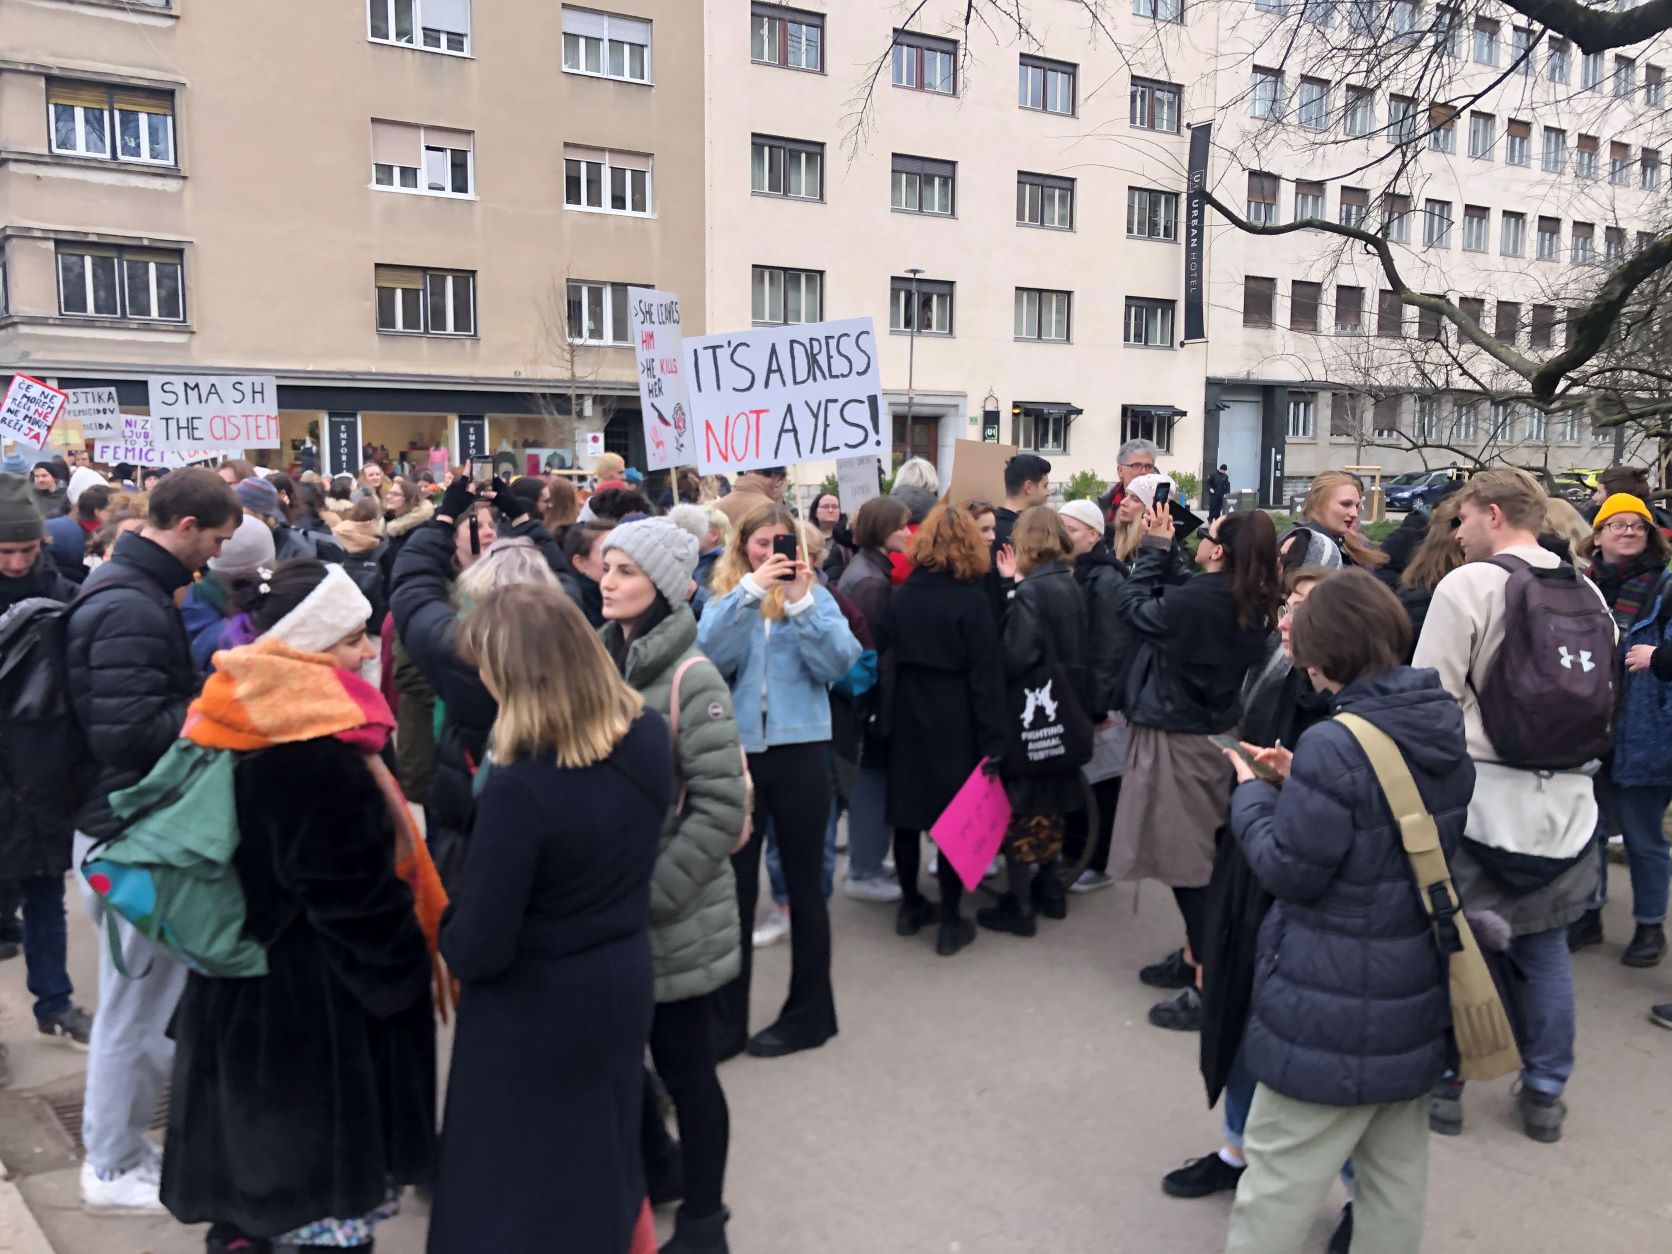 (VIDEO)  Feministični protestni shod v Ljubljani – Patriarhat ubija!